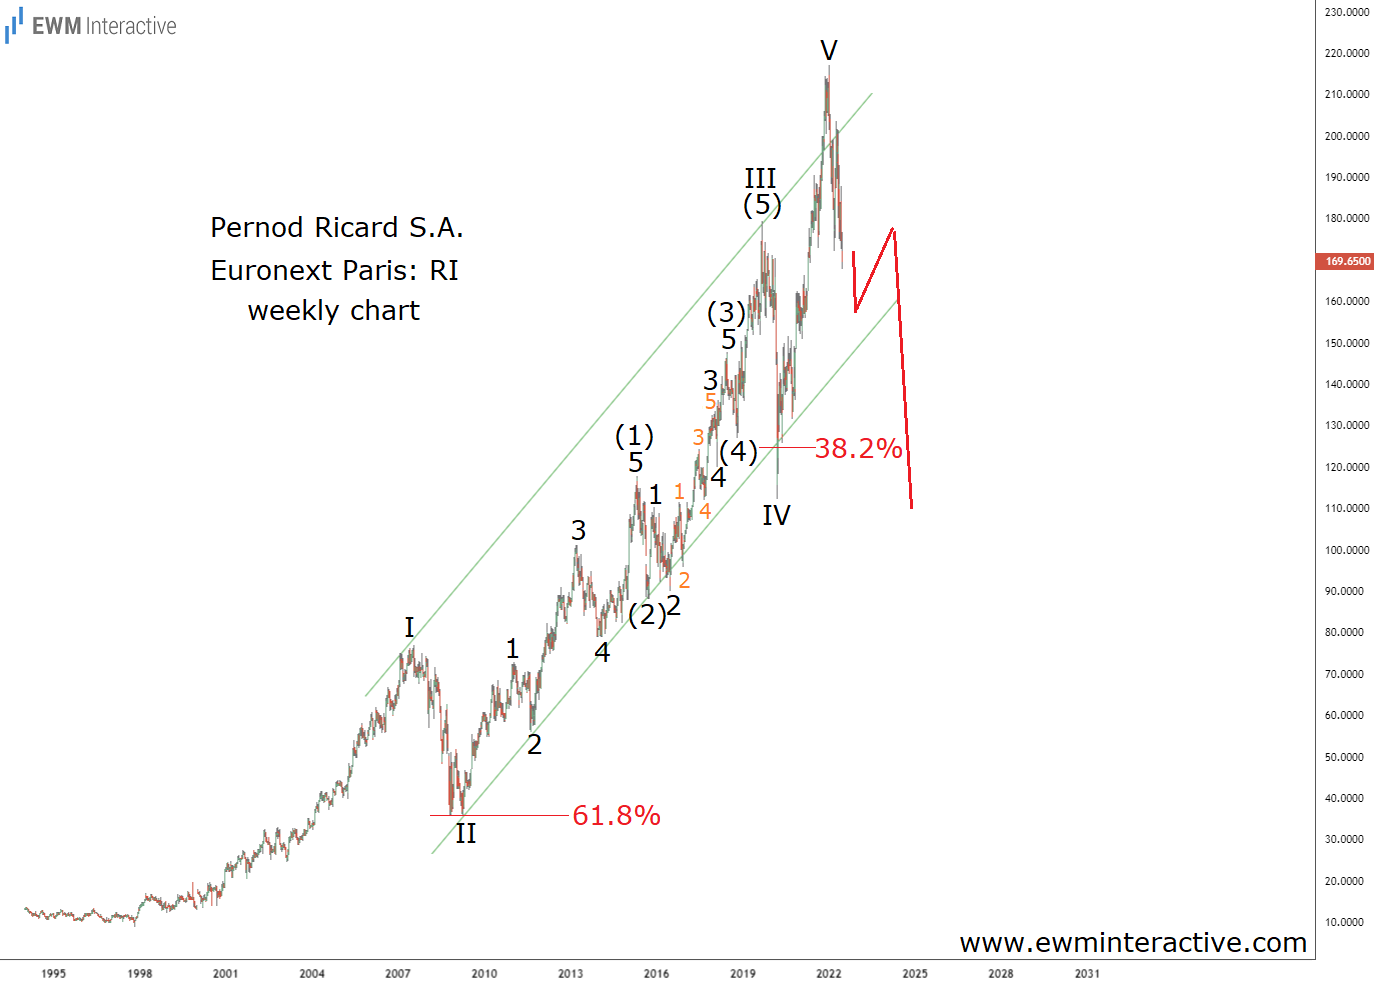 Pernod Ricard Stock Weekly Chart